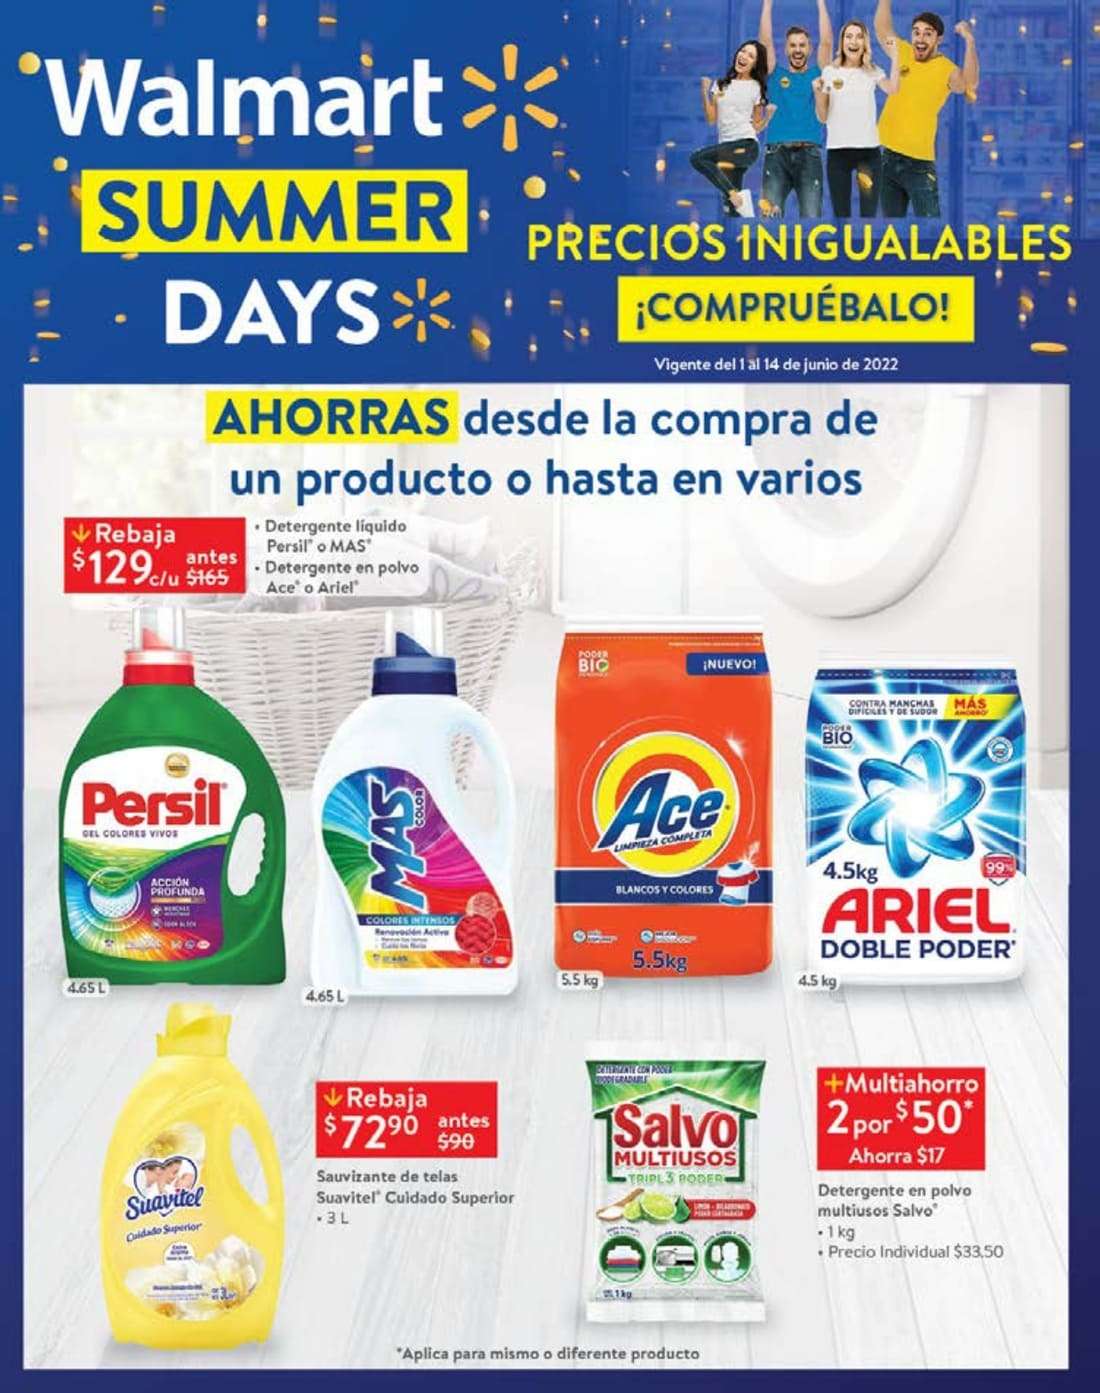 Ofertas Walmart Summer Days 1 al 14 de junio 2022